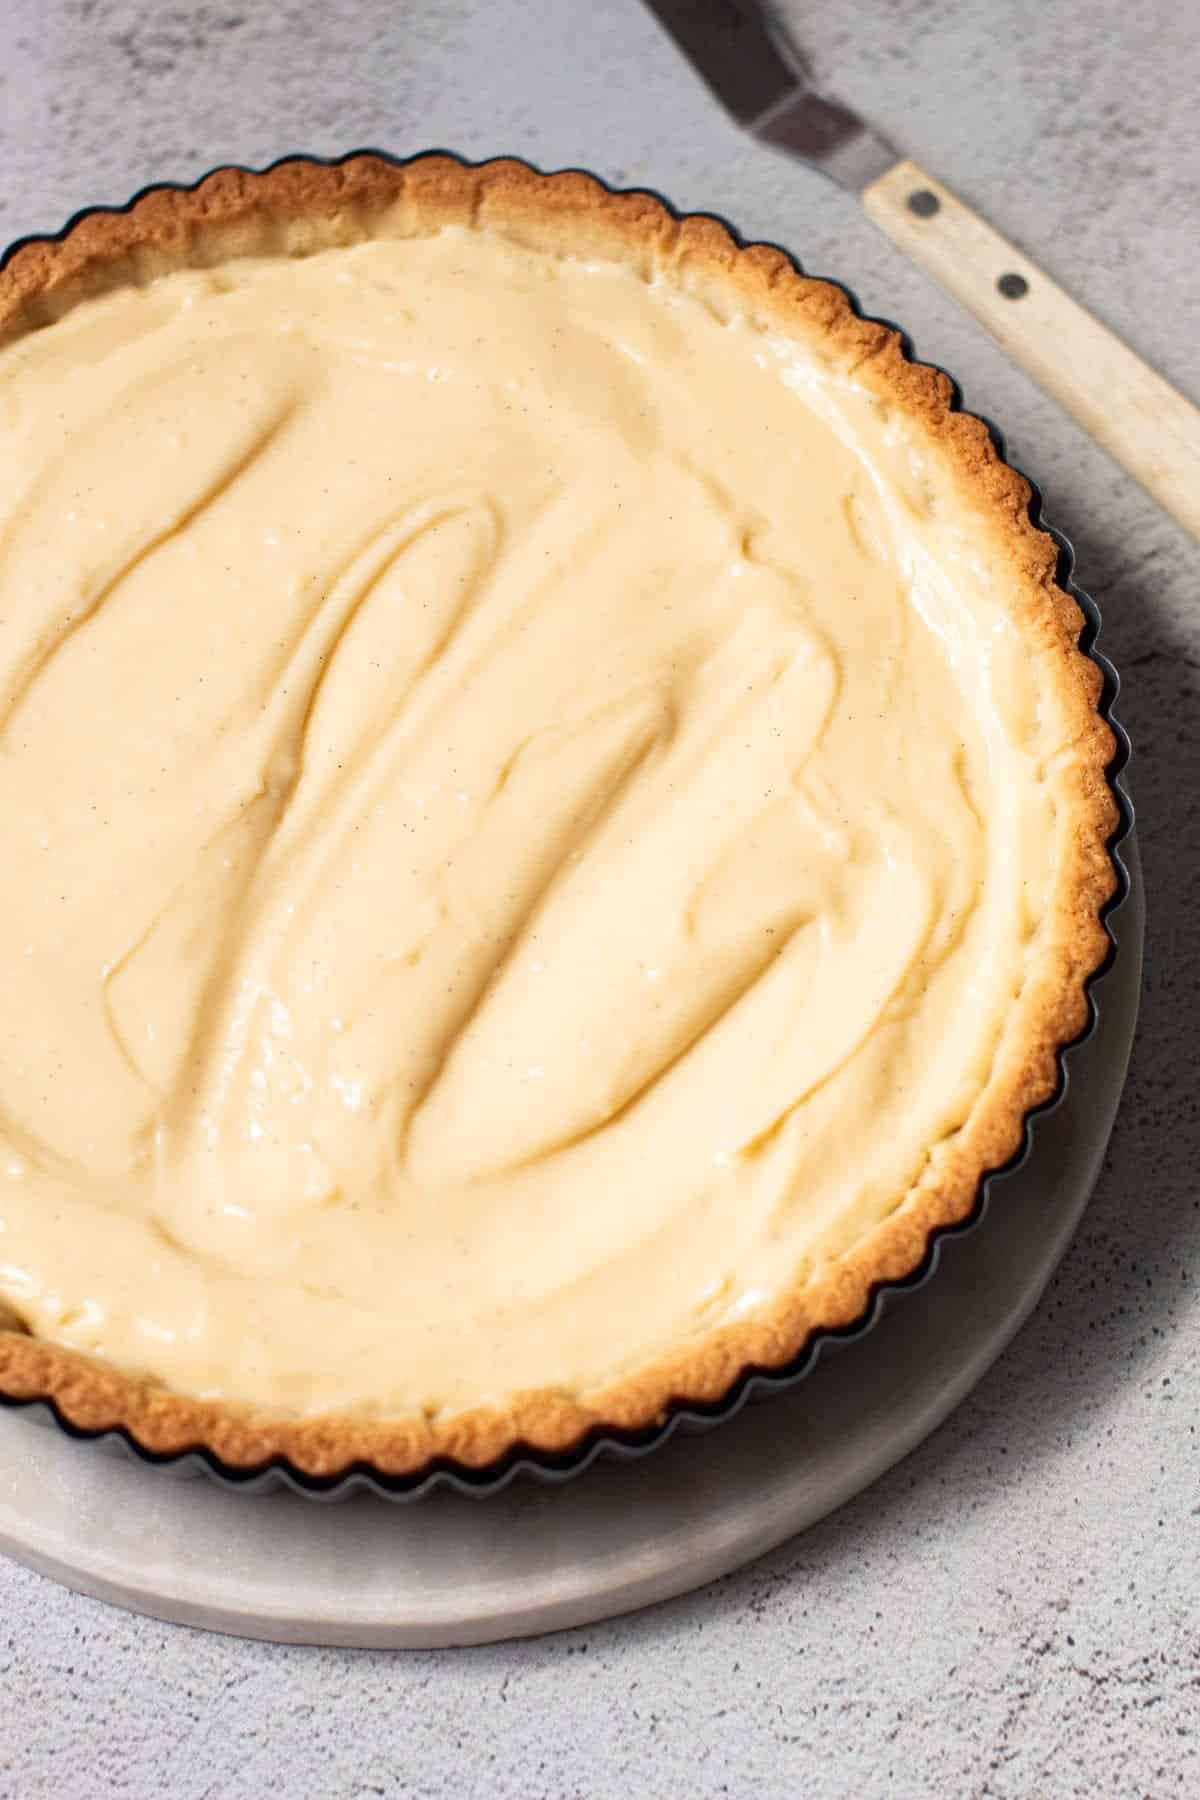 Yummy cream custard tart in a baking tray.